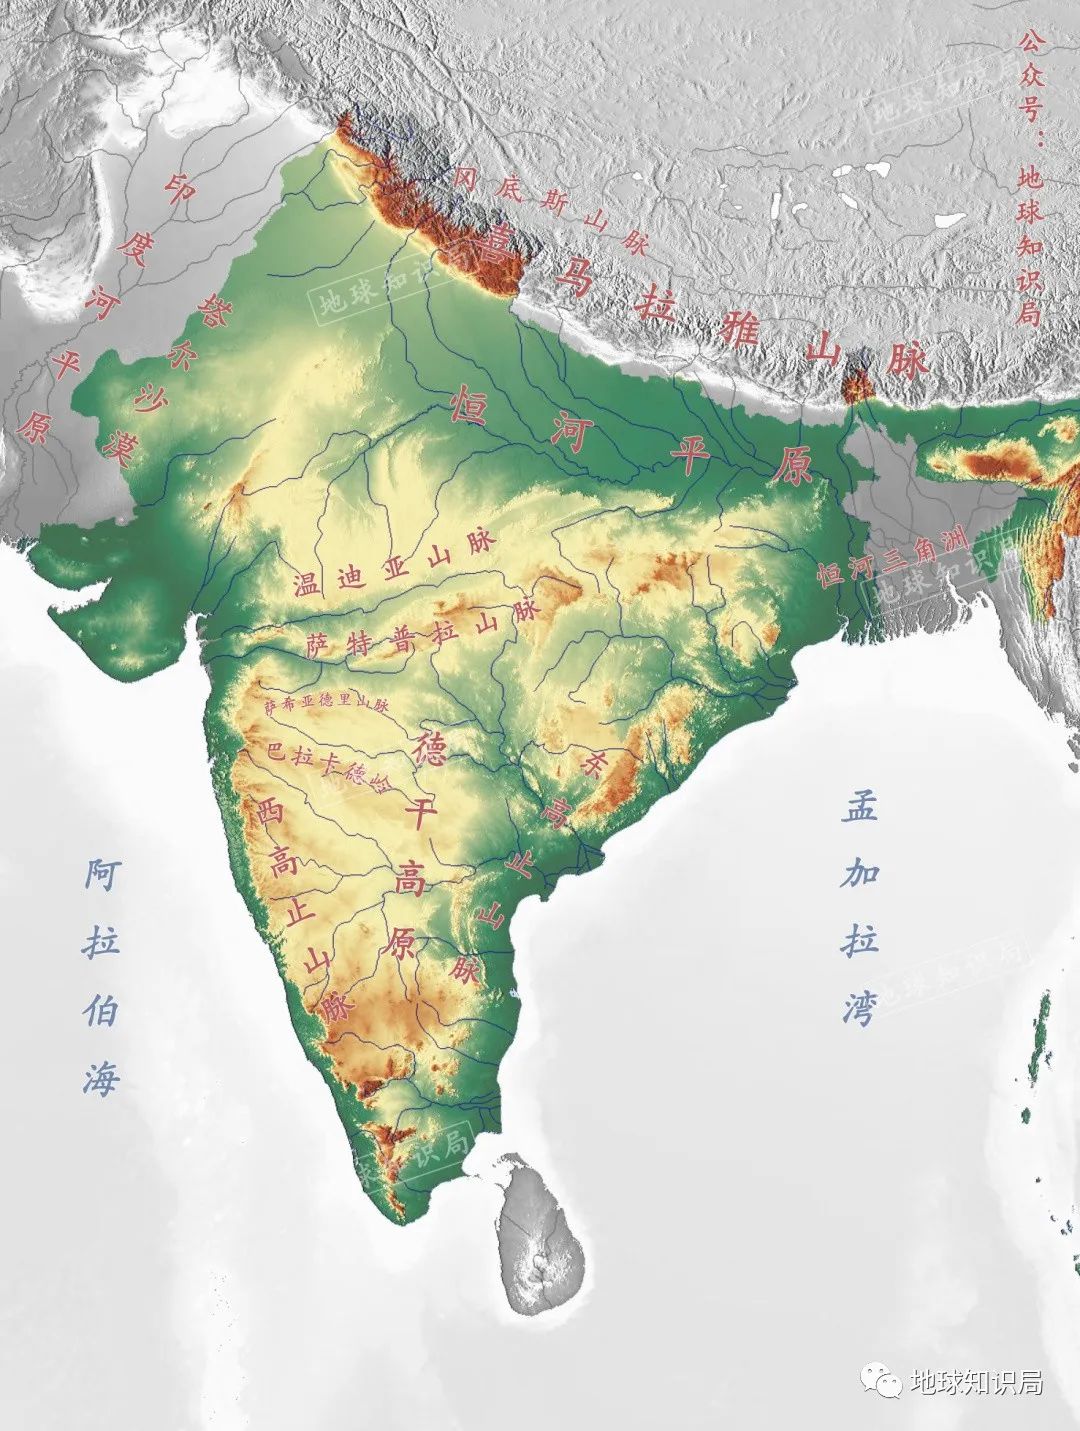 印度地图_印度地图中文版_印度地图全图_地图窝